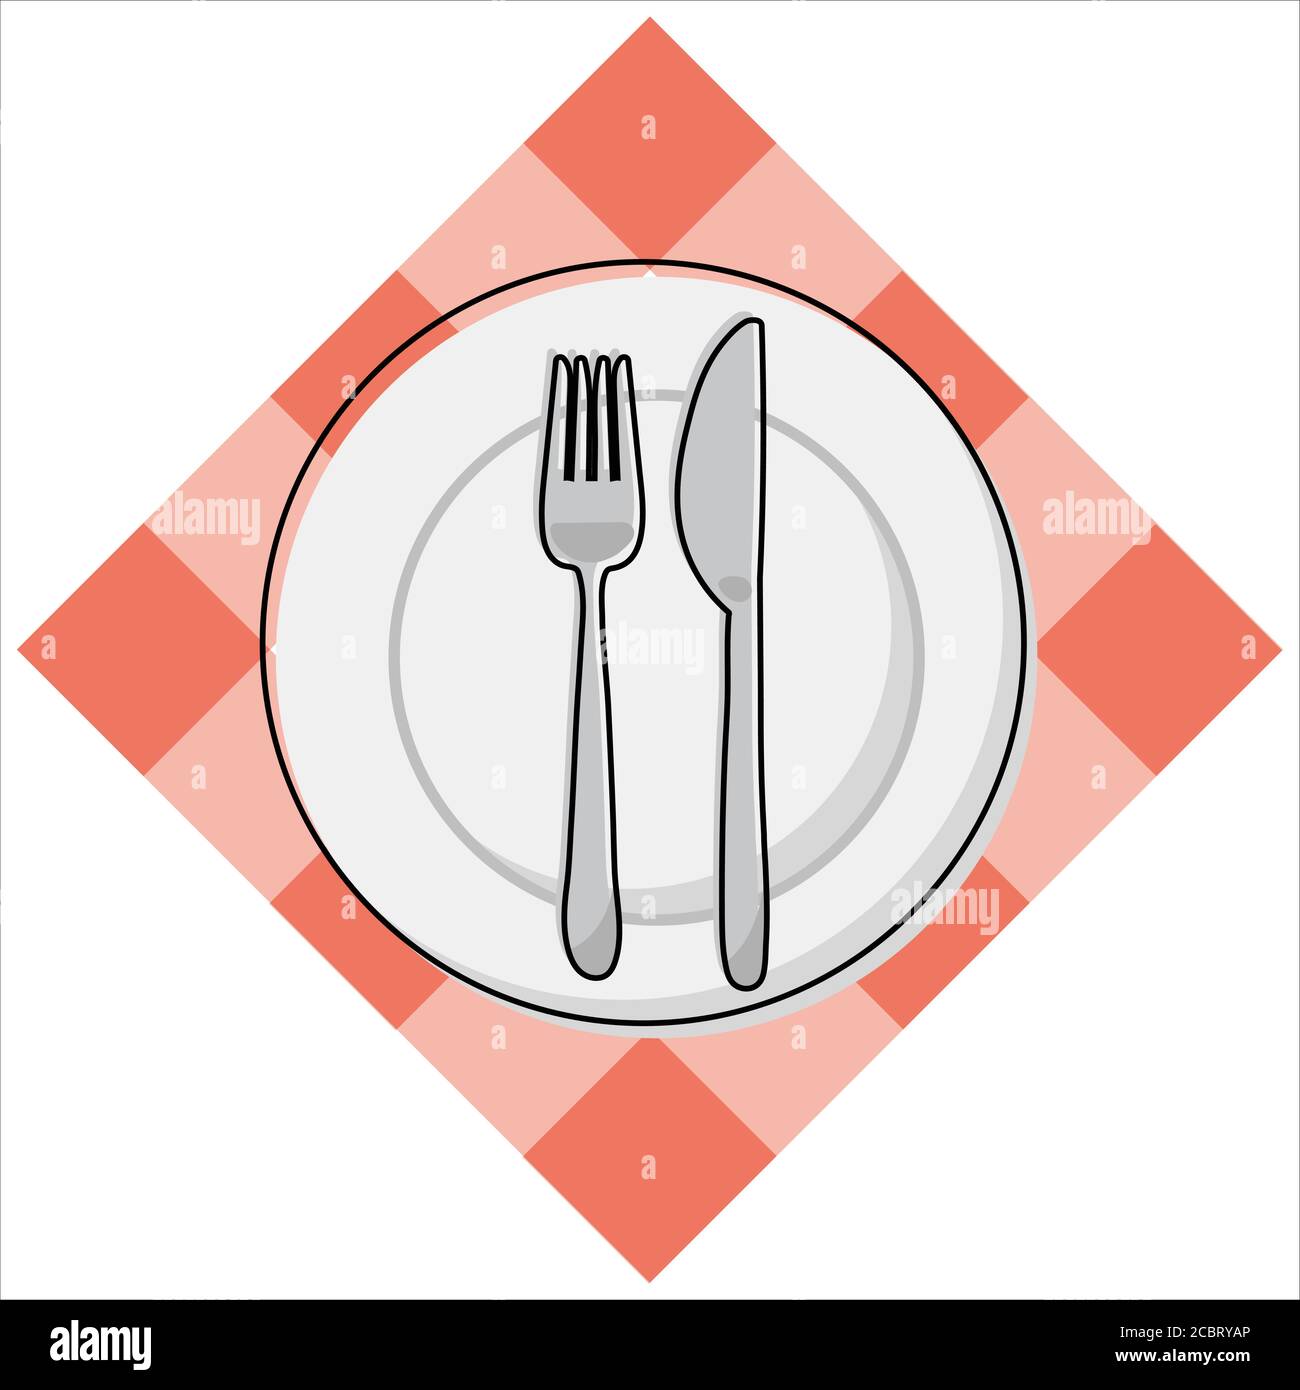 Assiette blanche avec couverts - vue du dessus. Fourchette, couteau, plat  et nappe rouge à motif Vichy. Illustration vectorielle simplifiée et  colorée Image Vectorielle Stock - Alamy